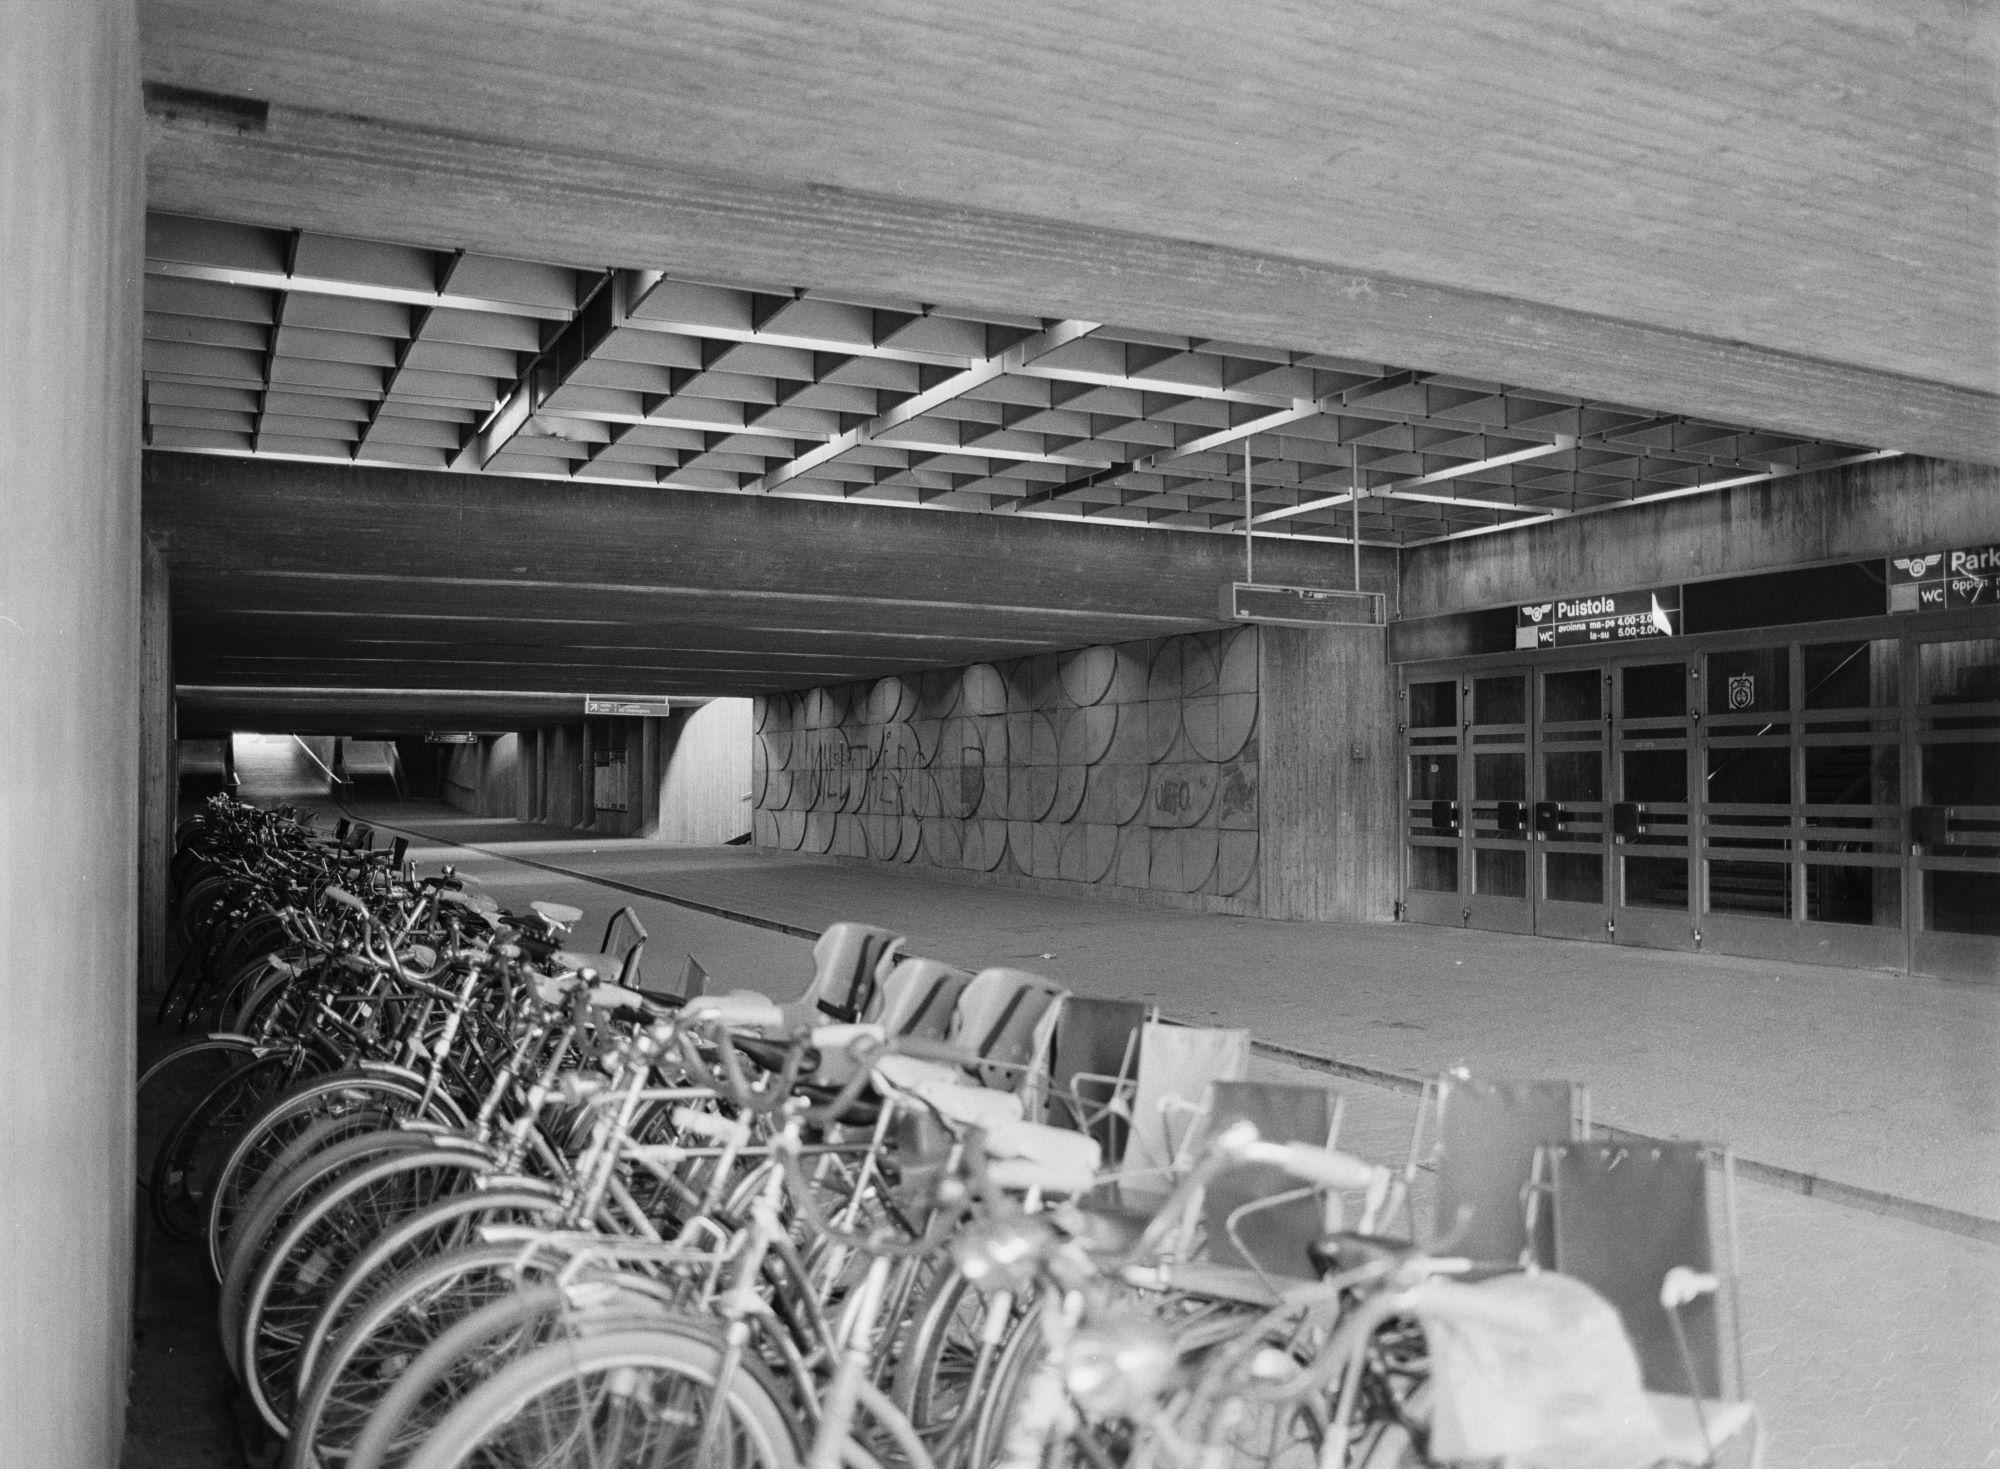 Kuva radan alikulkukäytävästä, jonka vasemmassa reunassa polkupyöriä. Oikealla puolella betoniseinässä reliefi ja rivi ovia. Katossa betonipalkit ja ruudutettu vyöhyke ovien kohdalla.